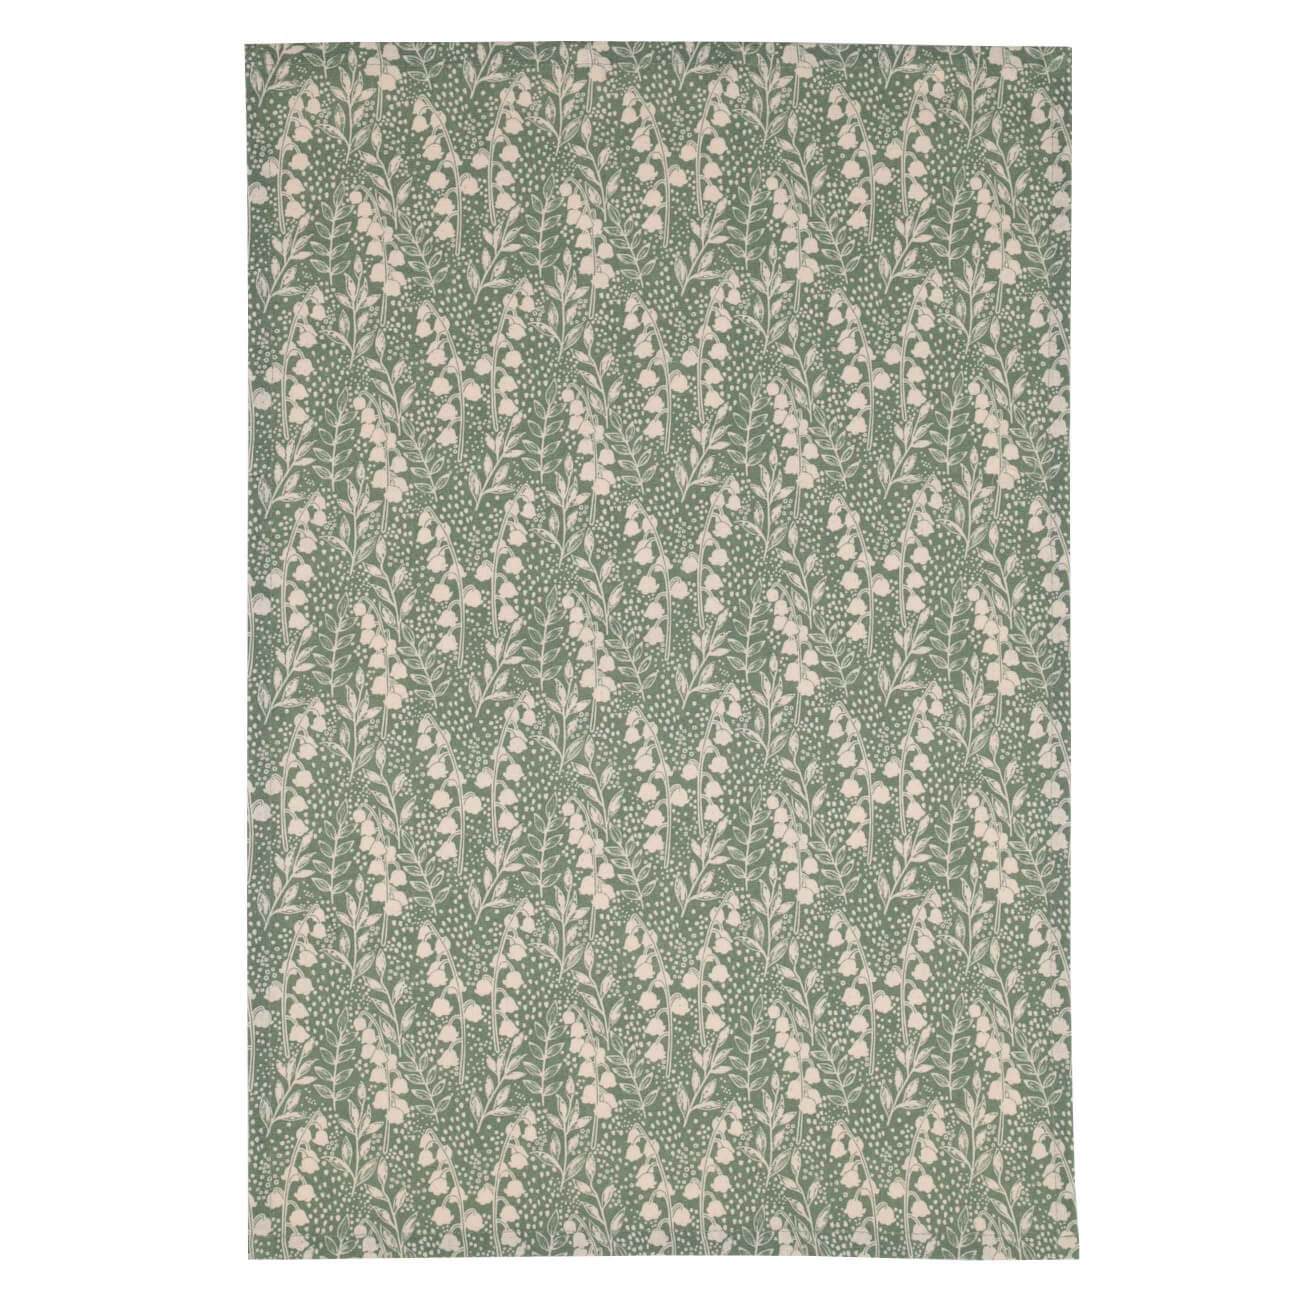 Полотенце кухонное, 40х60 см, хлопок, зеленое, Ландыши, May-lily полотенце вечер бриз р 40х70